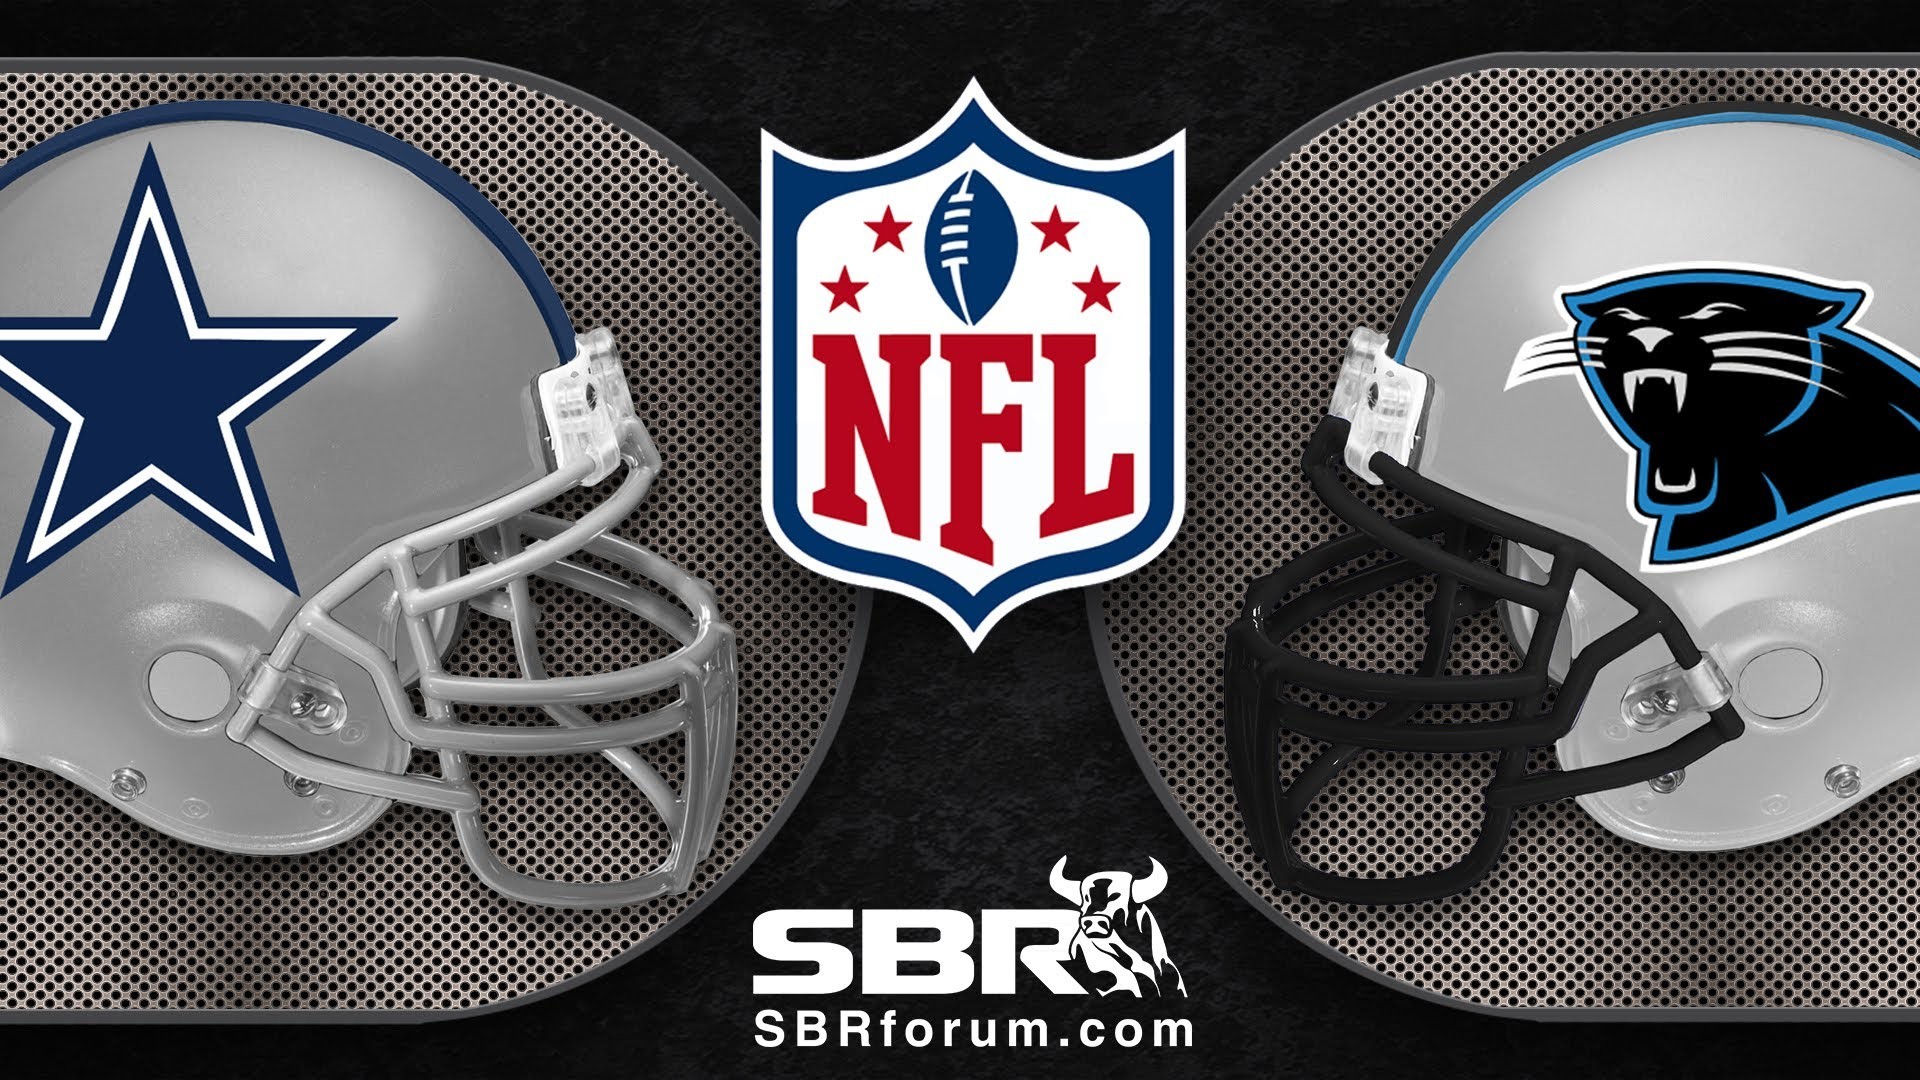 1920x1080 NFL Football Picks 2012 Week 7: Dallas Cowboys vs Carolina Panthers  Predictions and Odds Analysis